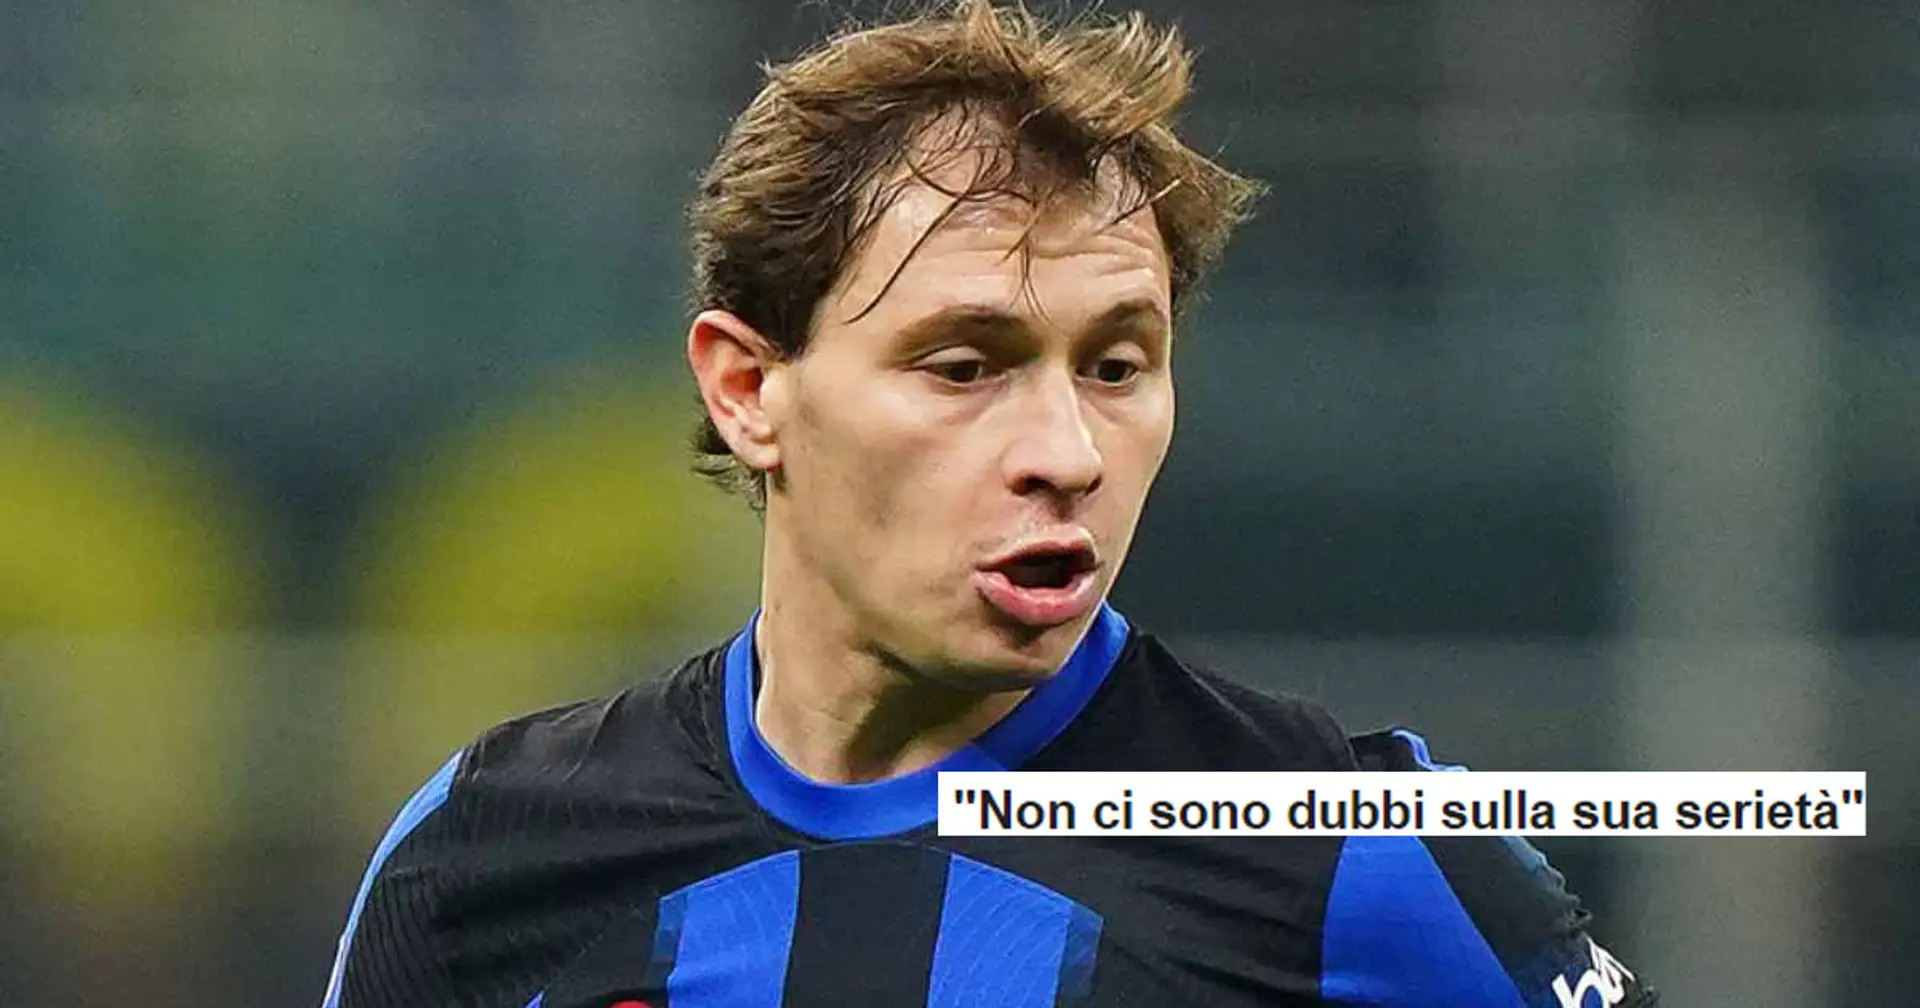 "Non ci sono dubbi sulla sua serietà": il rifiuto di Barella sul mercato scatena i tifosi dell'Inter